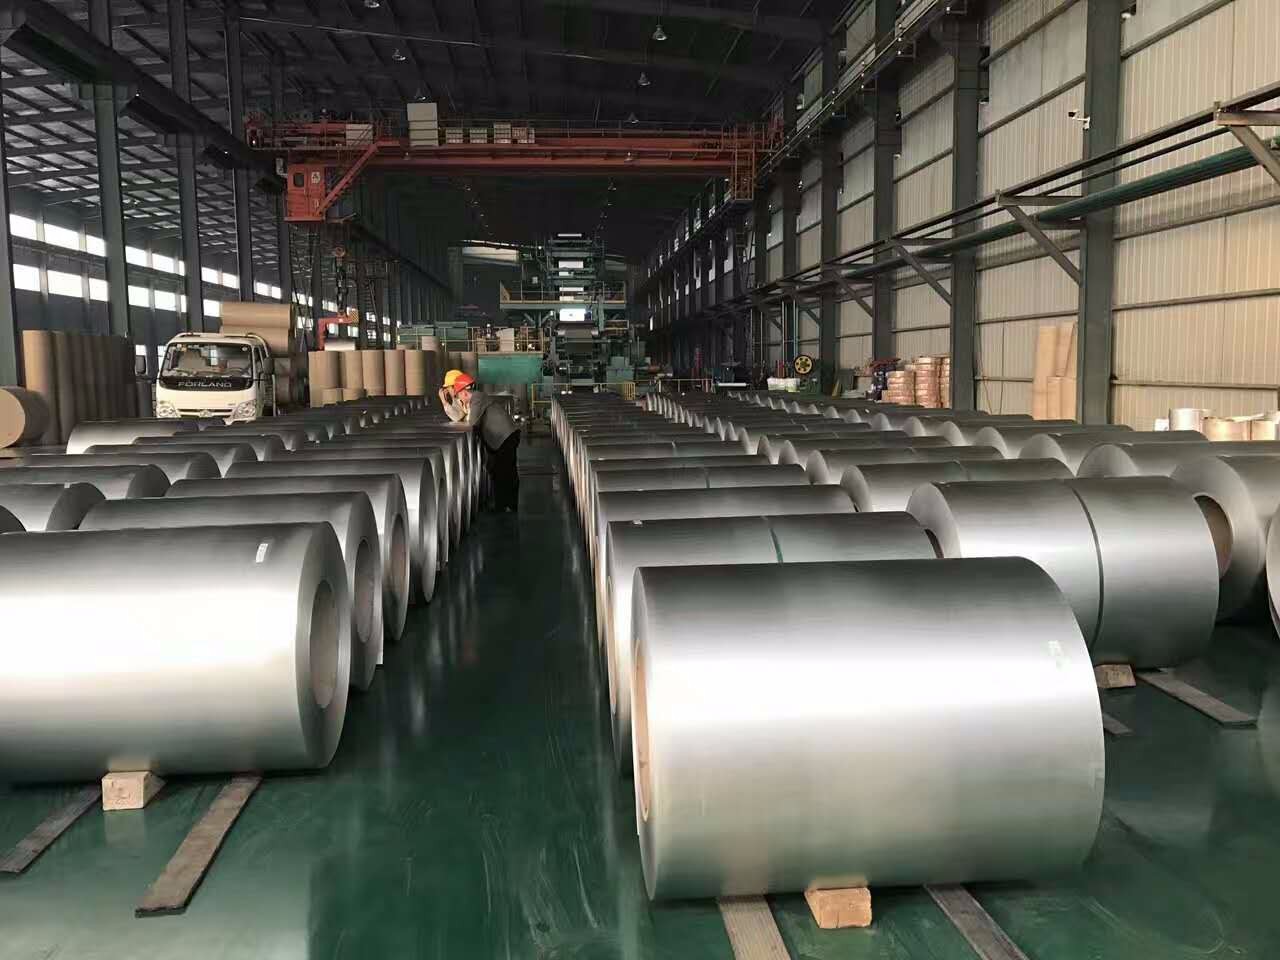 Çin galvanizli çelik rulo / levha / şerit satmak